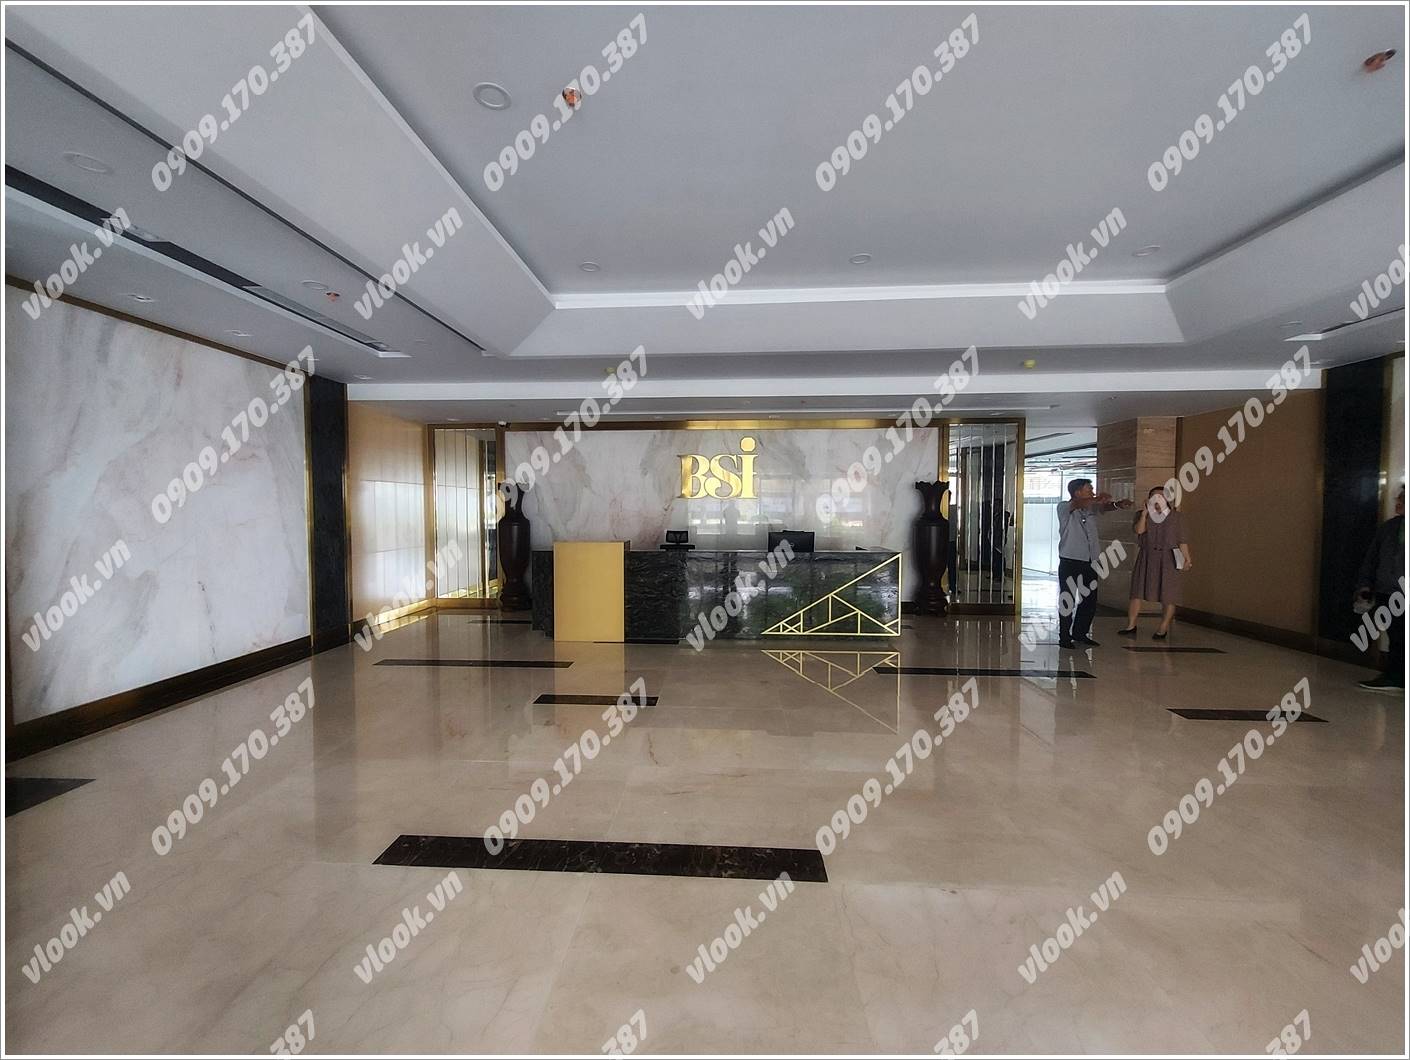 Cao ốc văn phòng cho thuê Tòa nhà Văn phòng BSI Tower, Quốc Lộ 13, Quận Thủ Đức, TP.HCM - vlook.vn